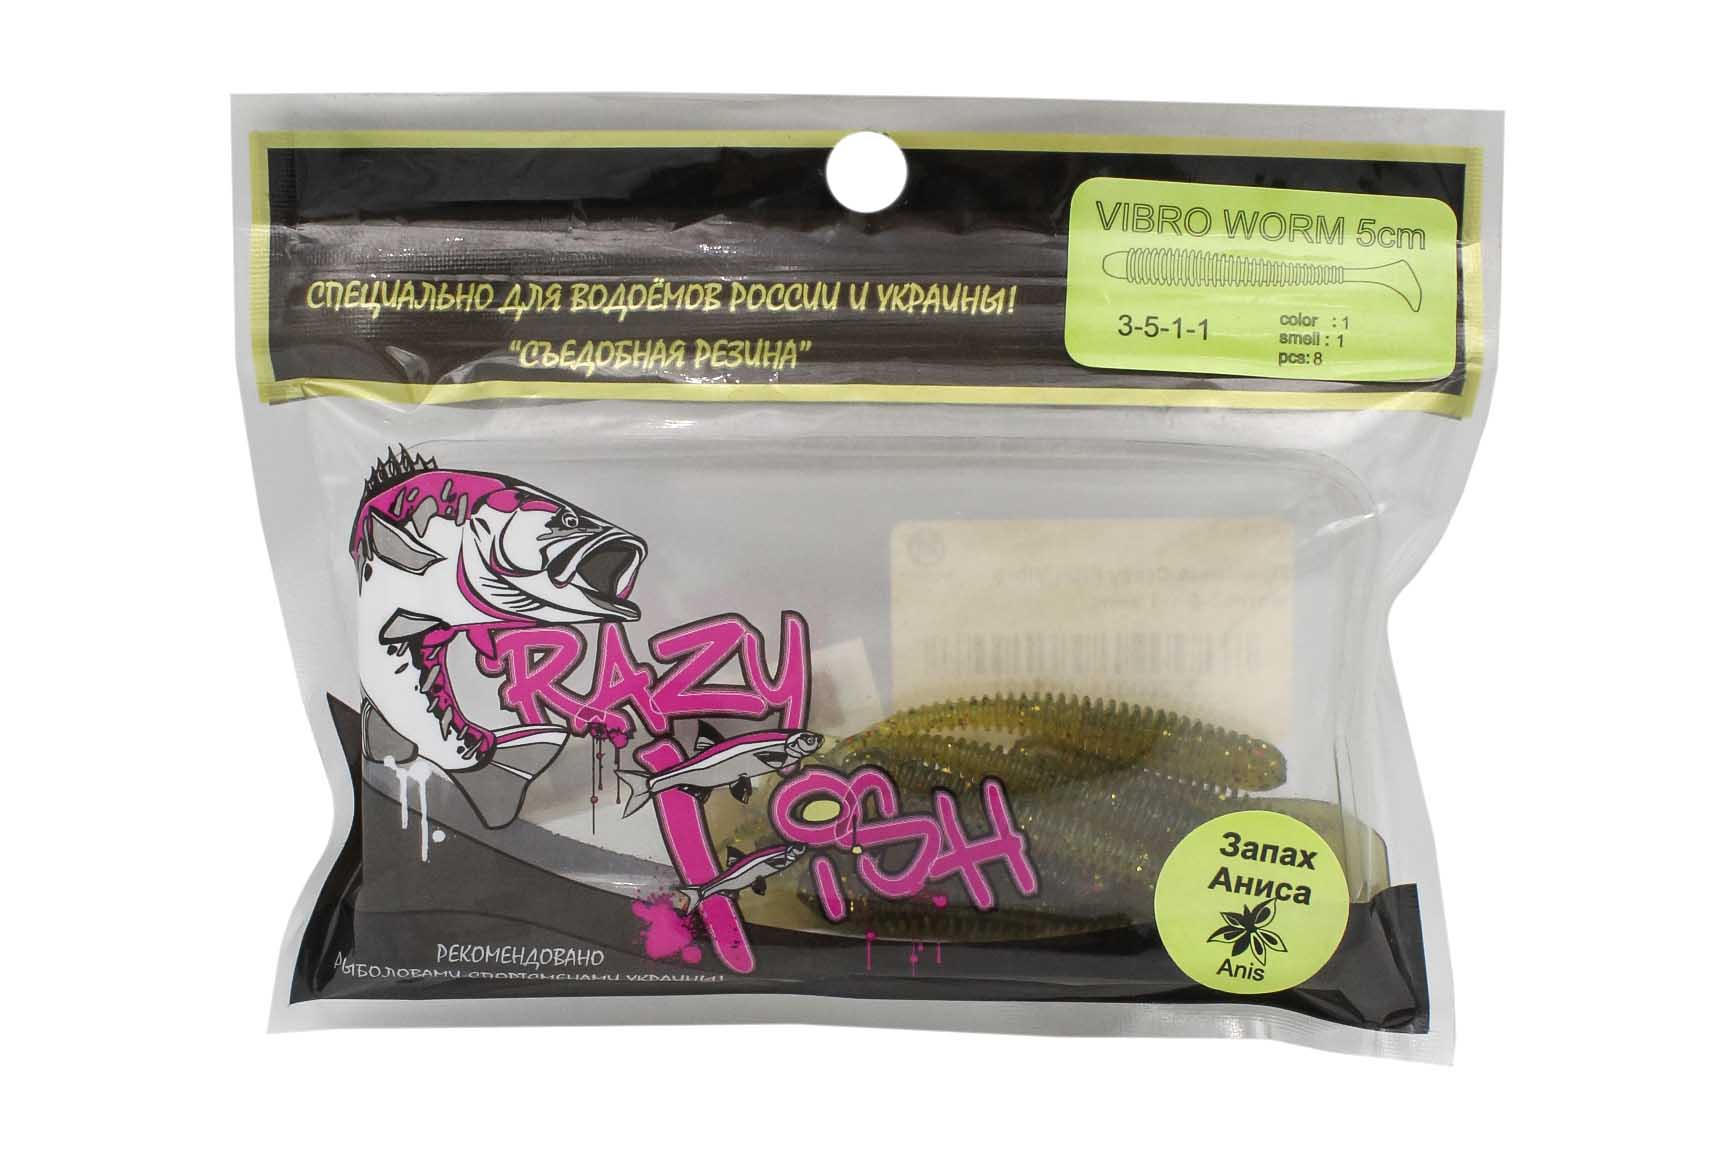 Приманка Crazy Fish Vibro worm 3-5-1-1 анис - фото 1